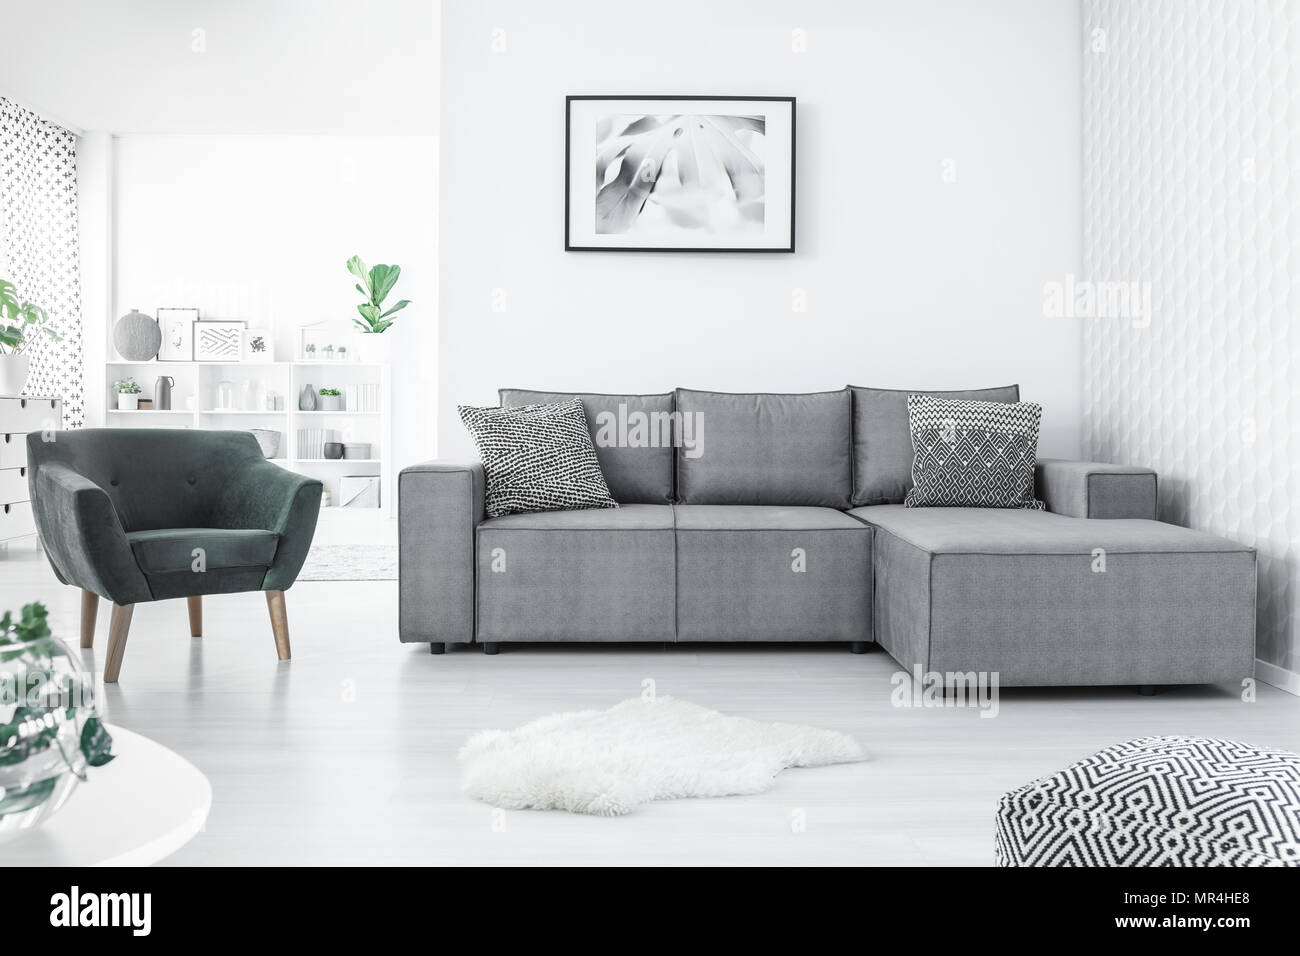 Fauteuil gris et canapé d'angle, la peinture sur le mur blanc et pouf dans un salon moderne intérieur Banque D'Images